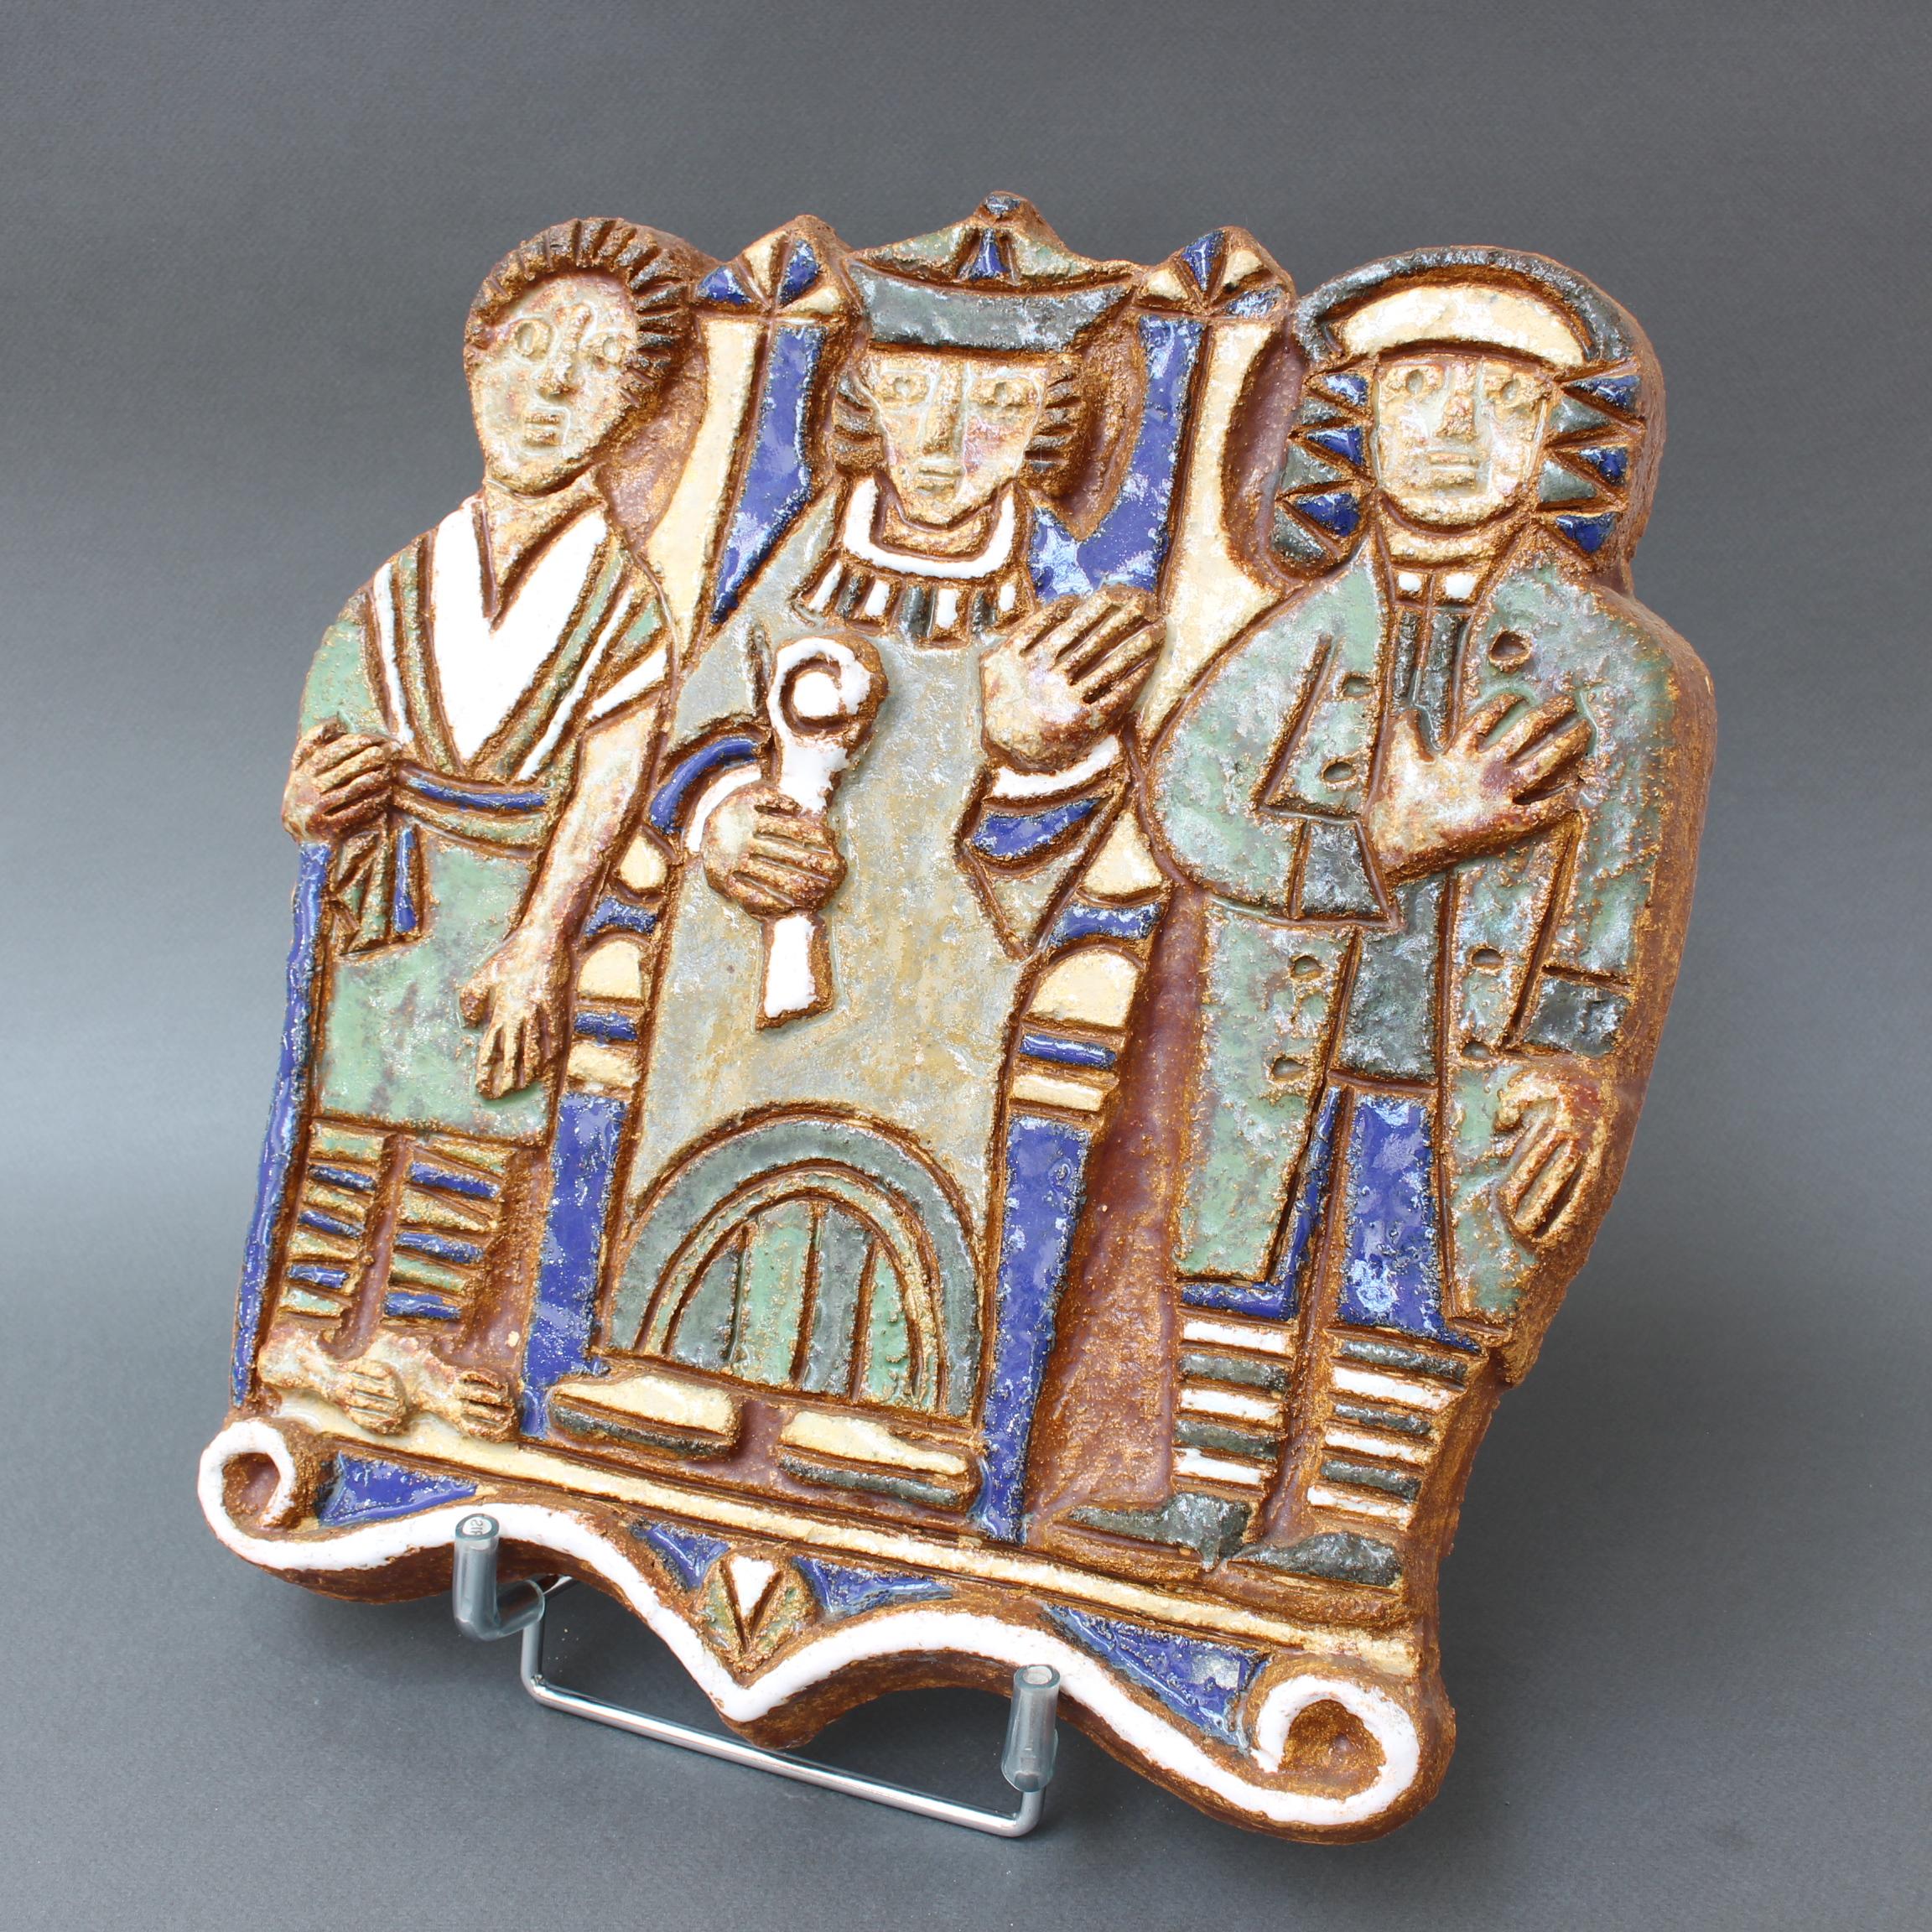 Plaque murale en céramique décorative française vintage avec trois personnages, par Les Argonautes, Vallauris, France (vers les années 1960). Une pièce rafraîchissante, naïve et charmante représentant trois hommes en robes et chapeaux d'antan. C'est